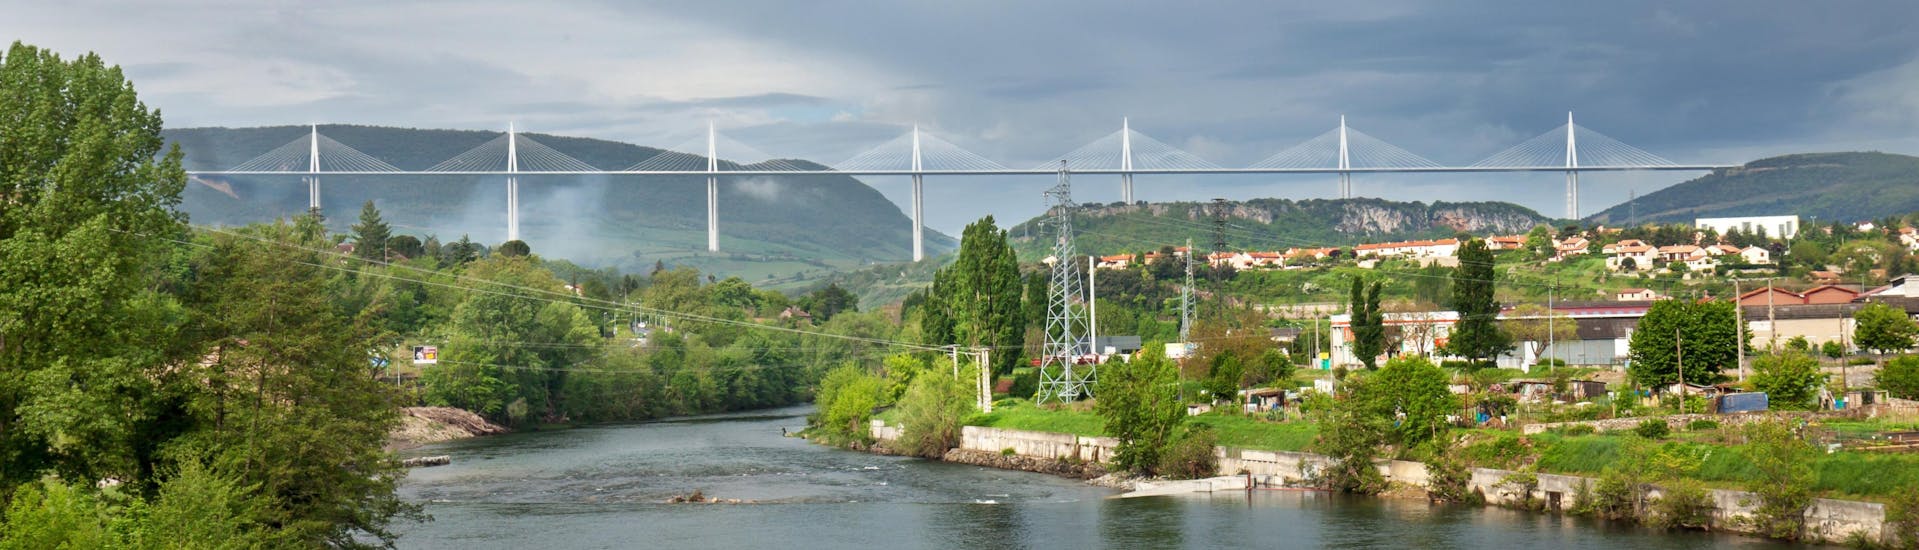 Vue du pont de Millau sous lequel coule la rivière Tarn, une destination populaire pour faire du canoë.